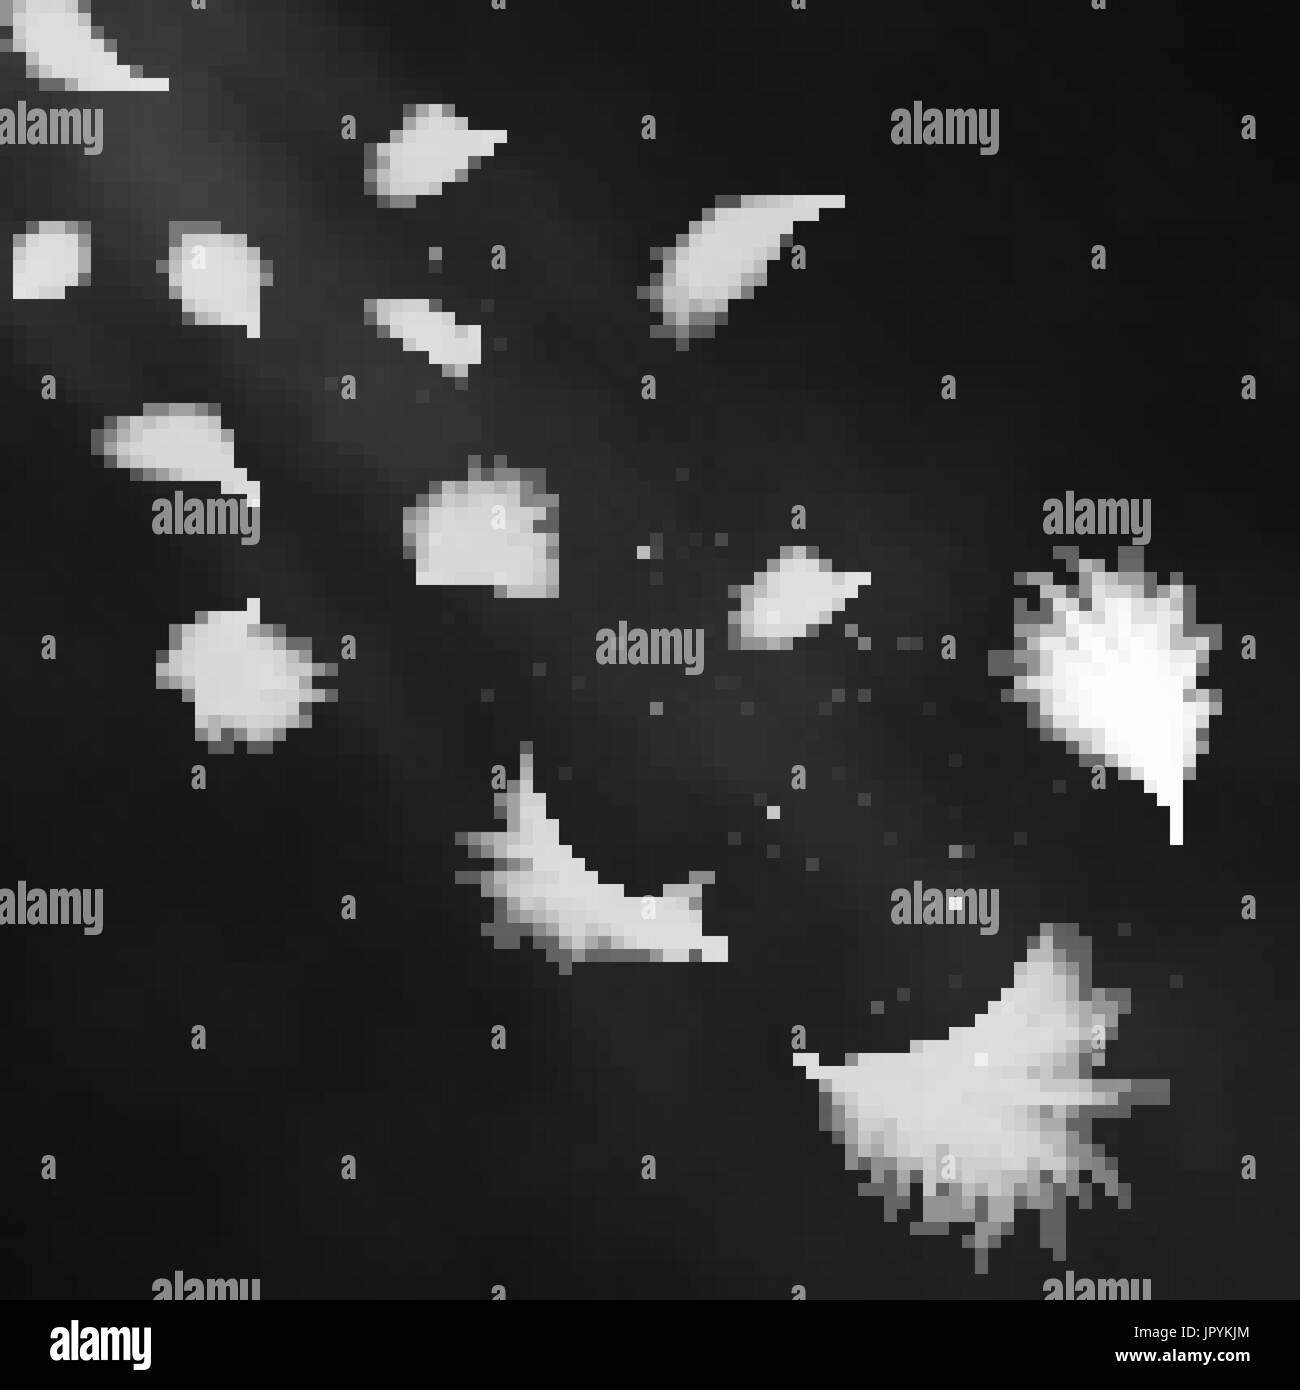 Realistische 3d detaillierte weißen Schwan Federn auf einem schwarzen Hintergrund. Vektor-Illustration. Fallende Federn abstrakte Lichtgestaltung Stock Vektor